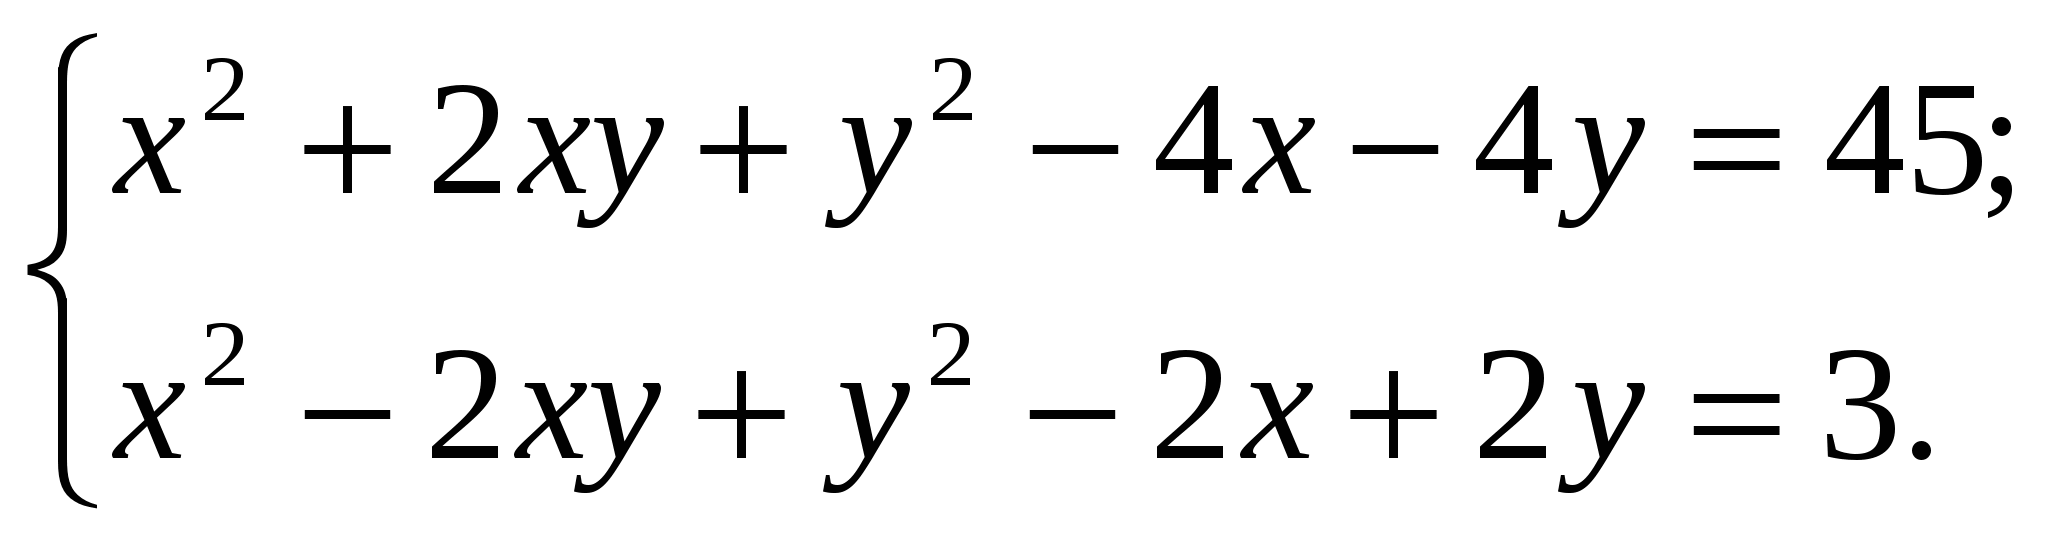 Тест по теме Системы уравнений и неравенств второго порядка